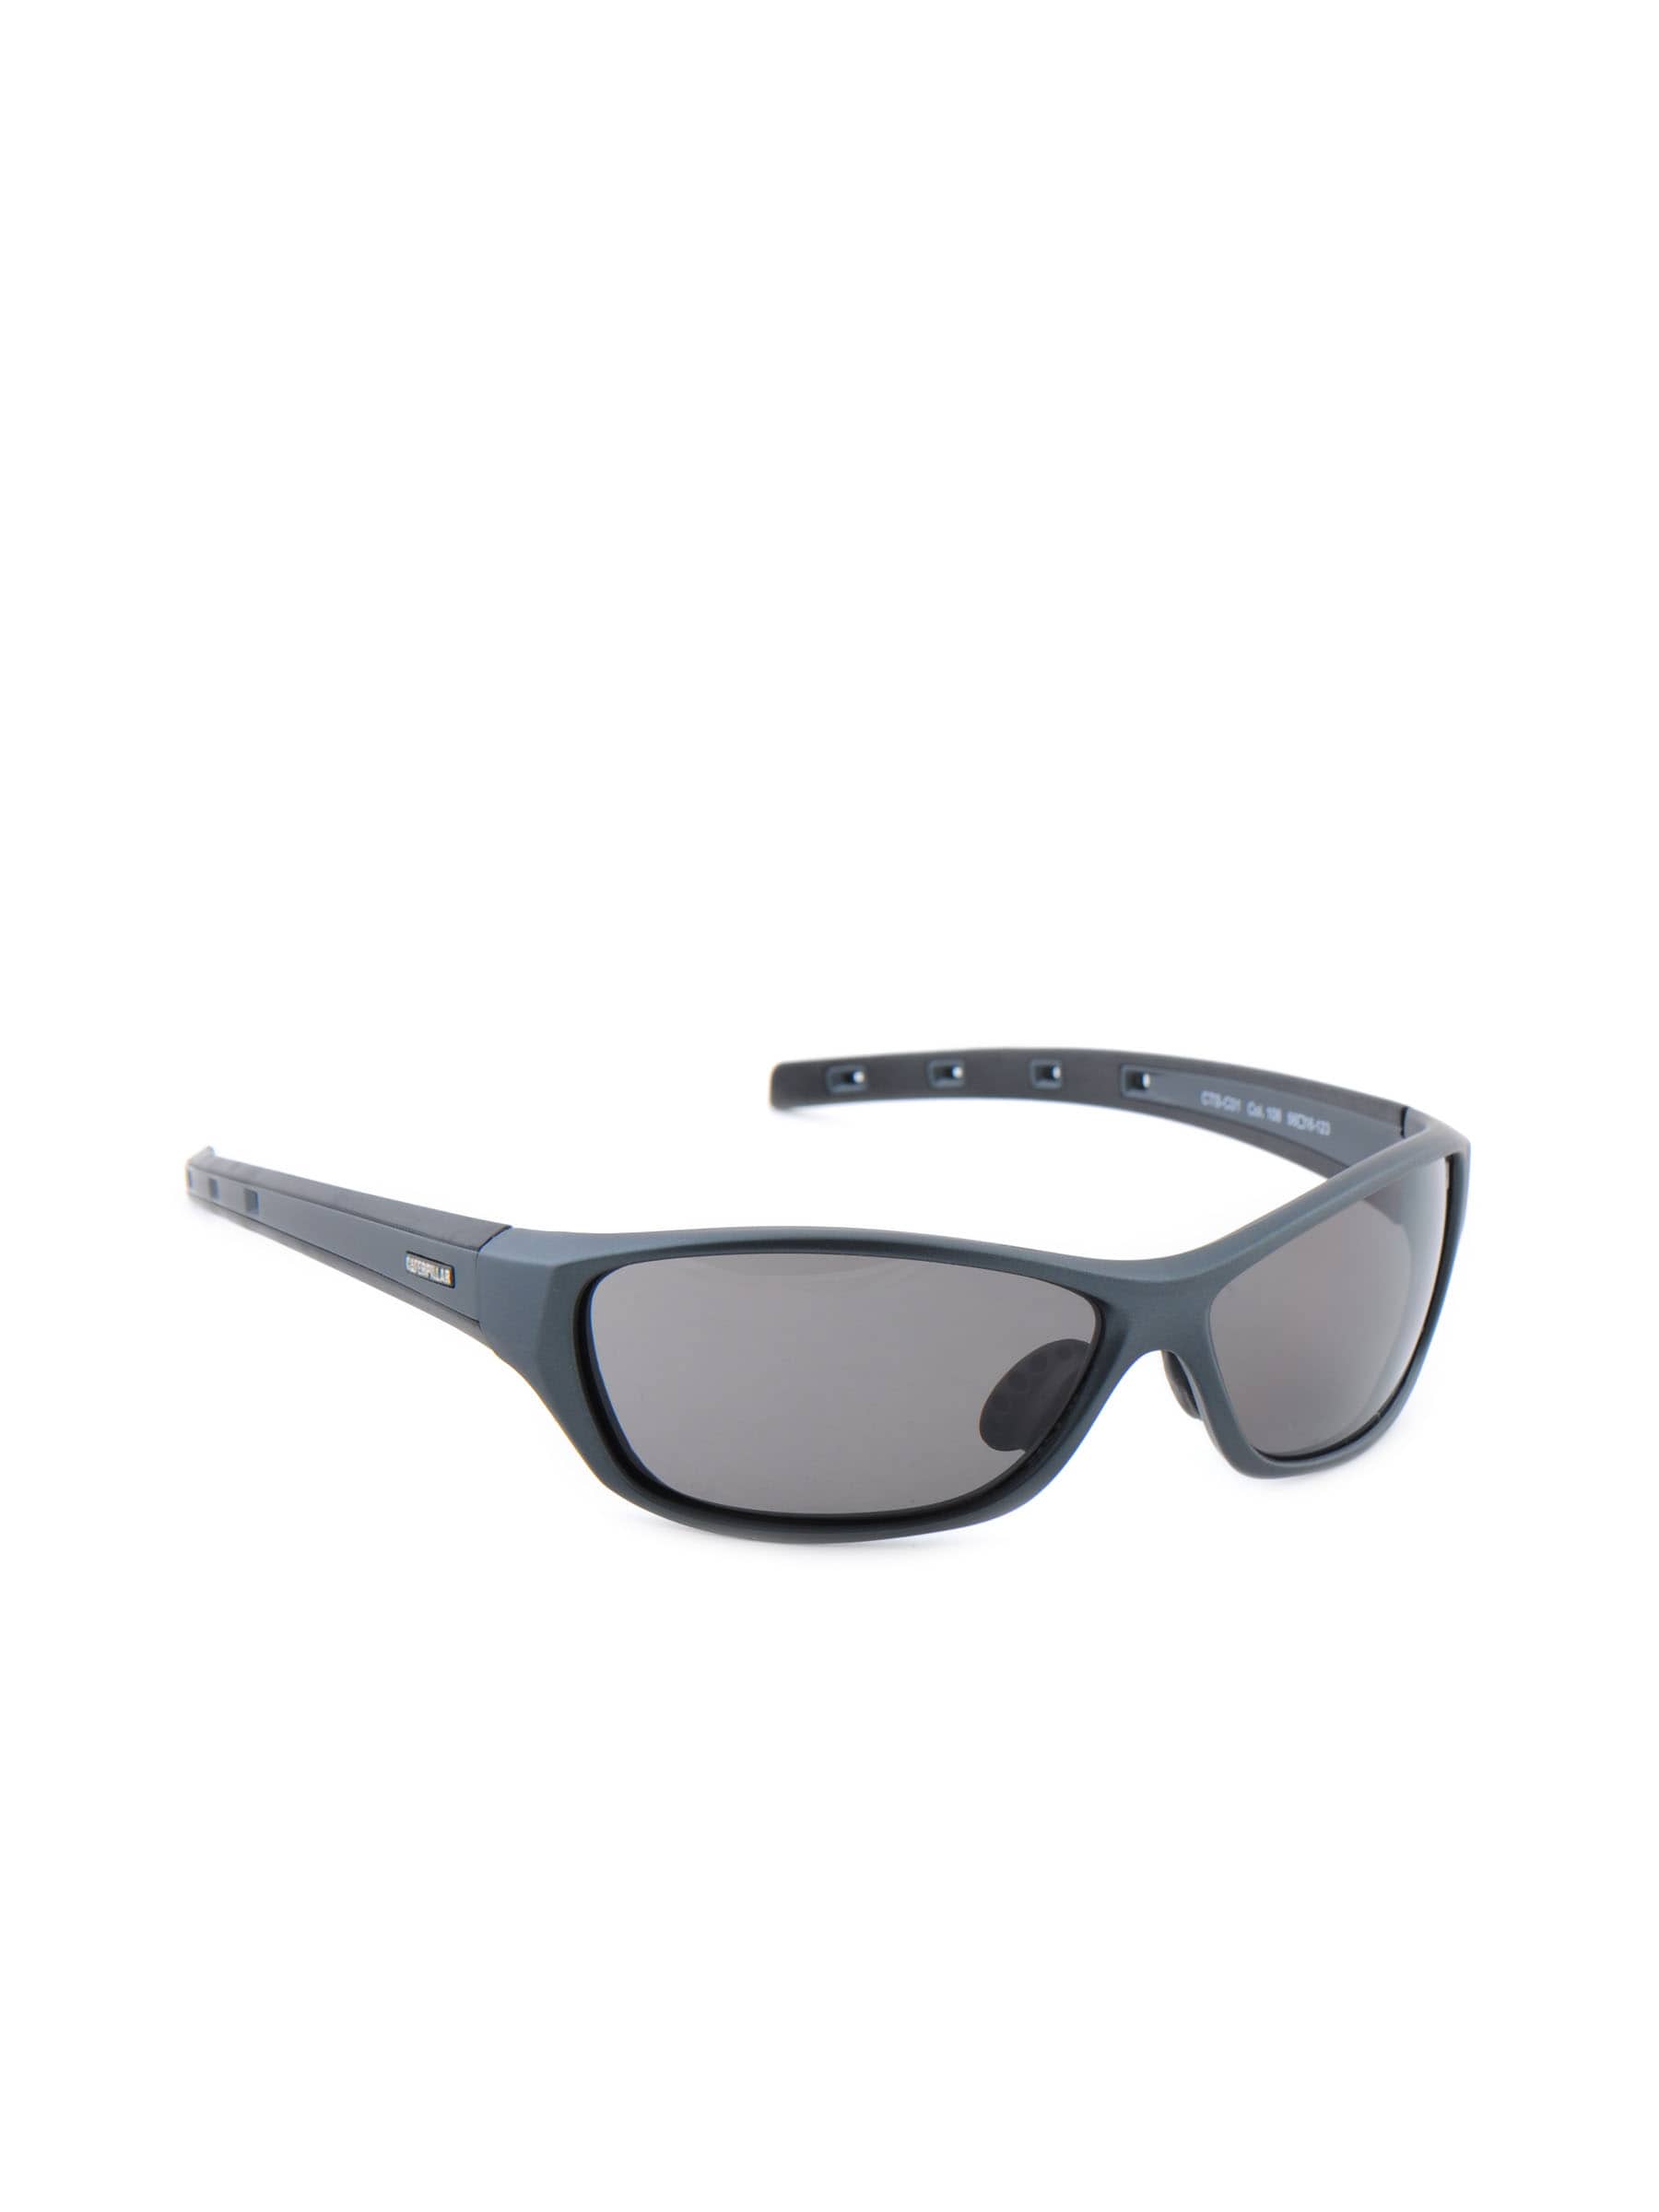 Cat Unisex Classic Black Sunglasses